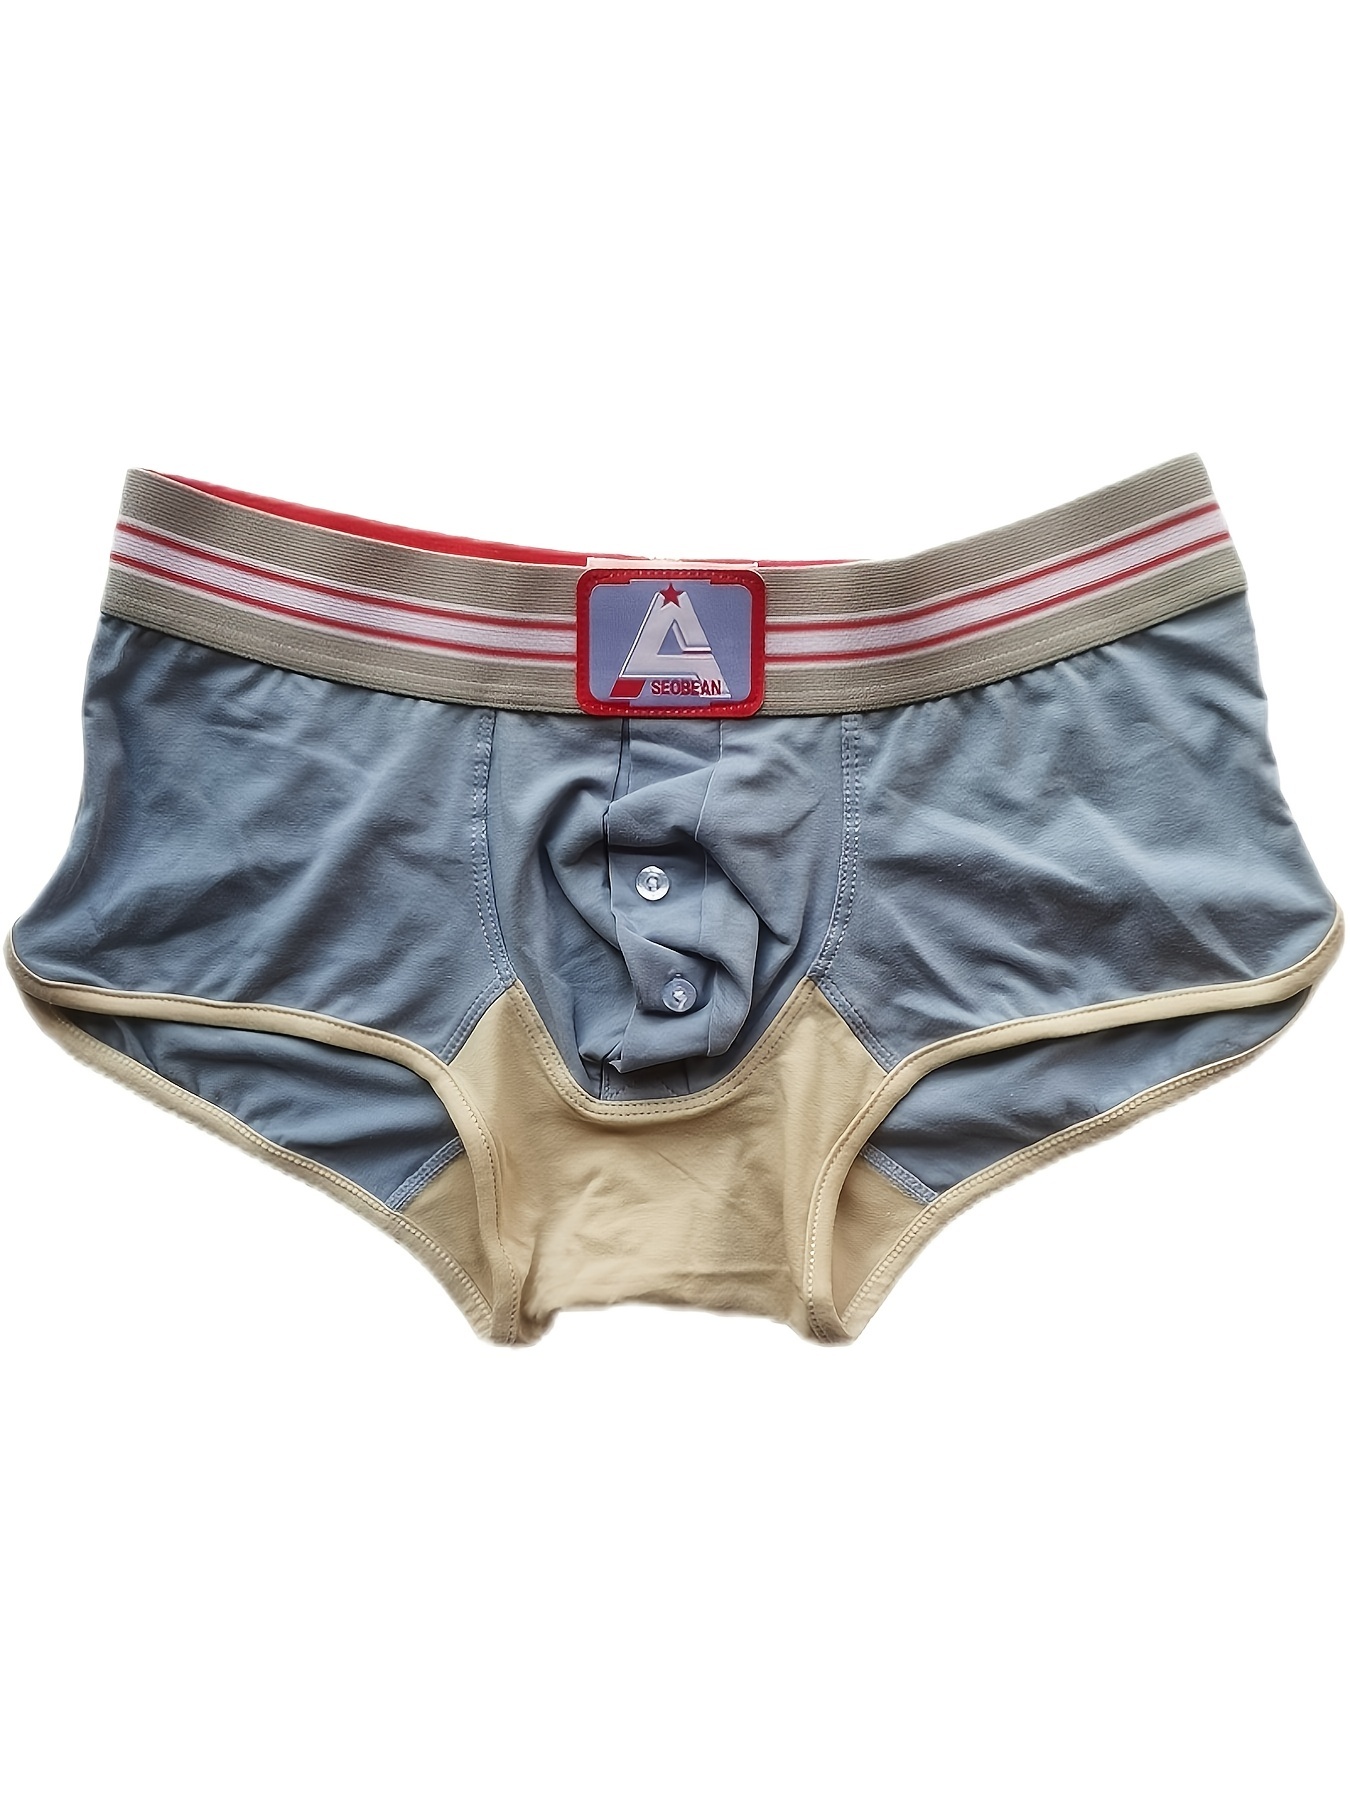 Low Waist Underwear Male Boxer Briefs Underpants Man Slip Luxury Brands U  Pouch